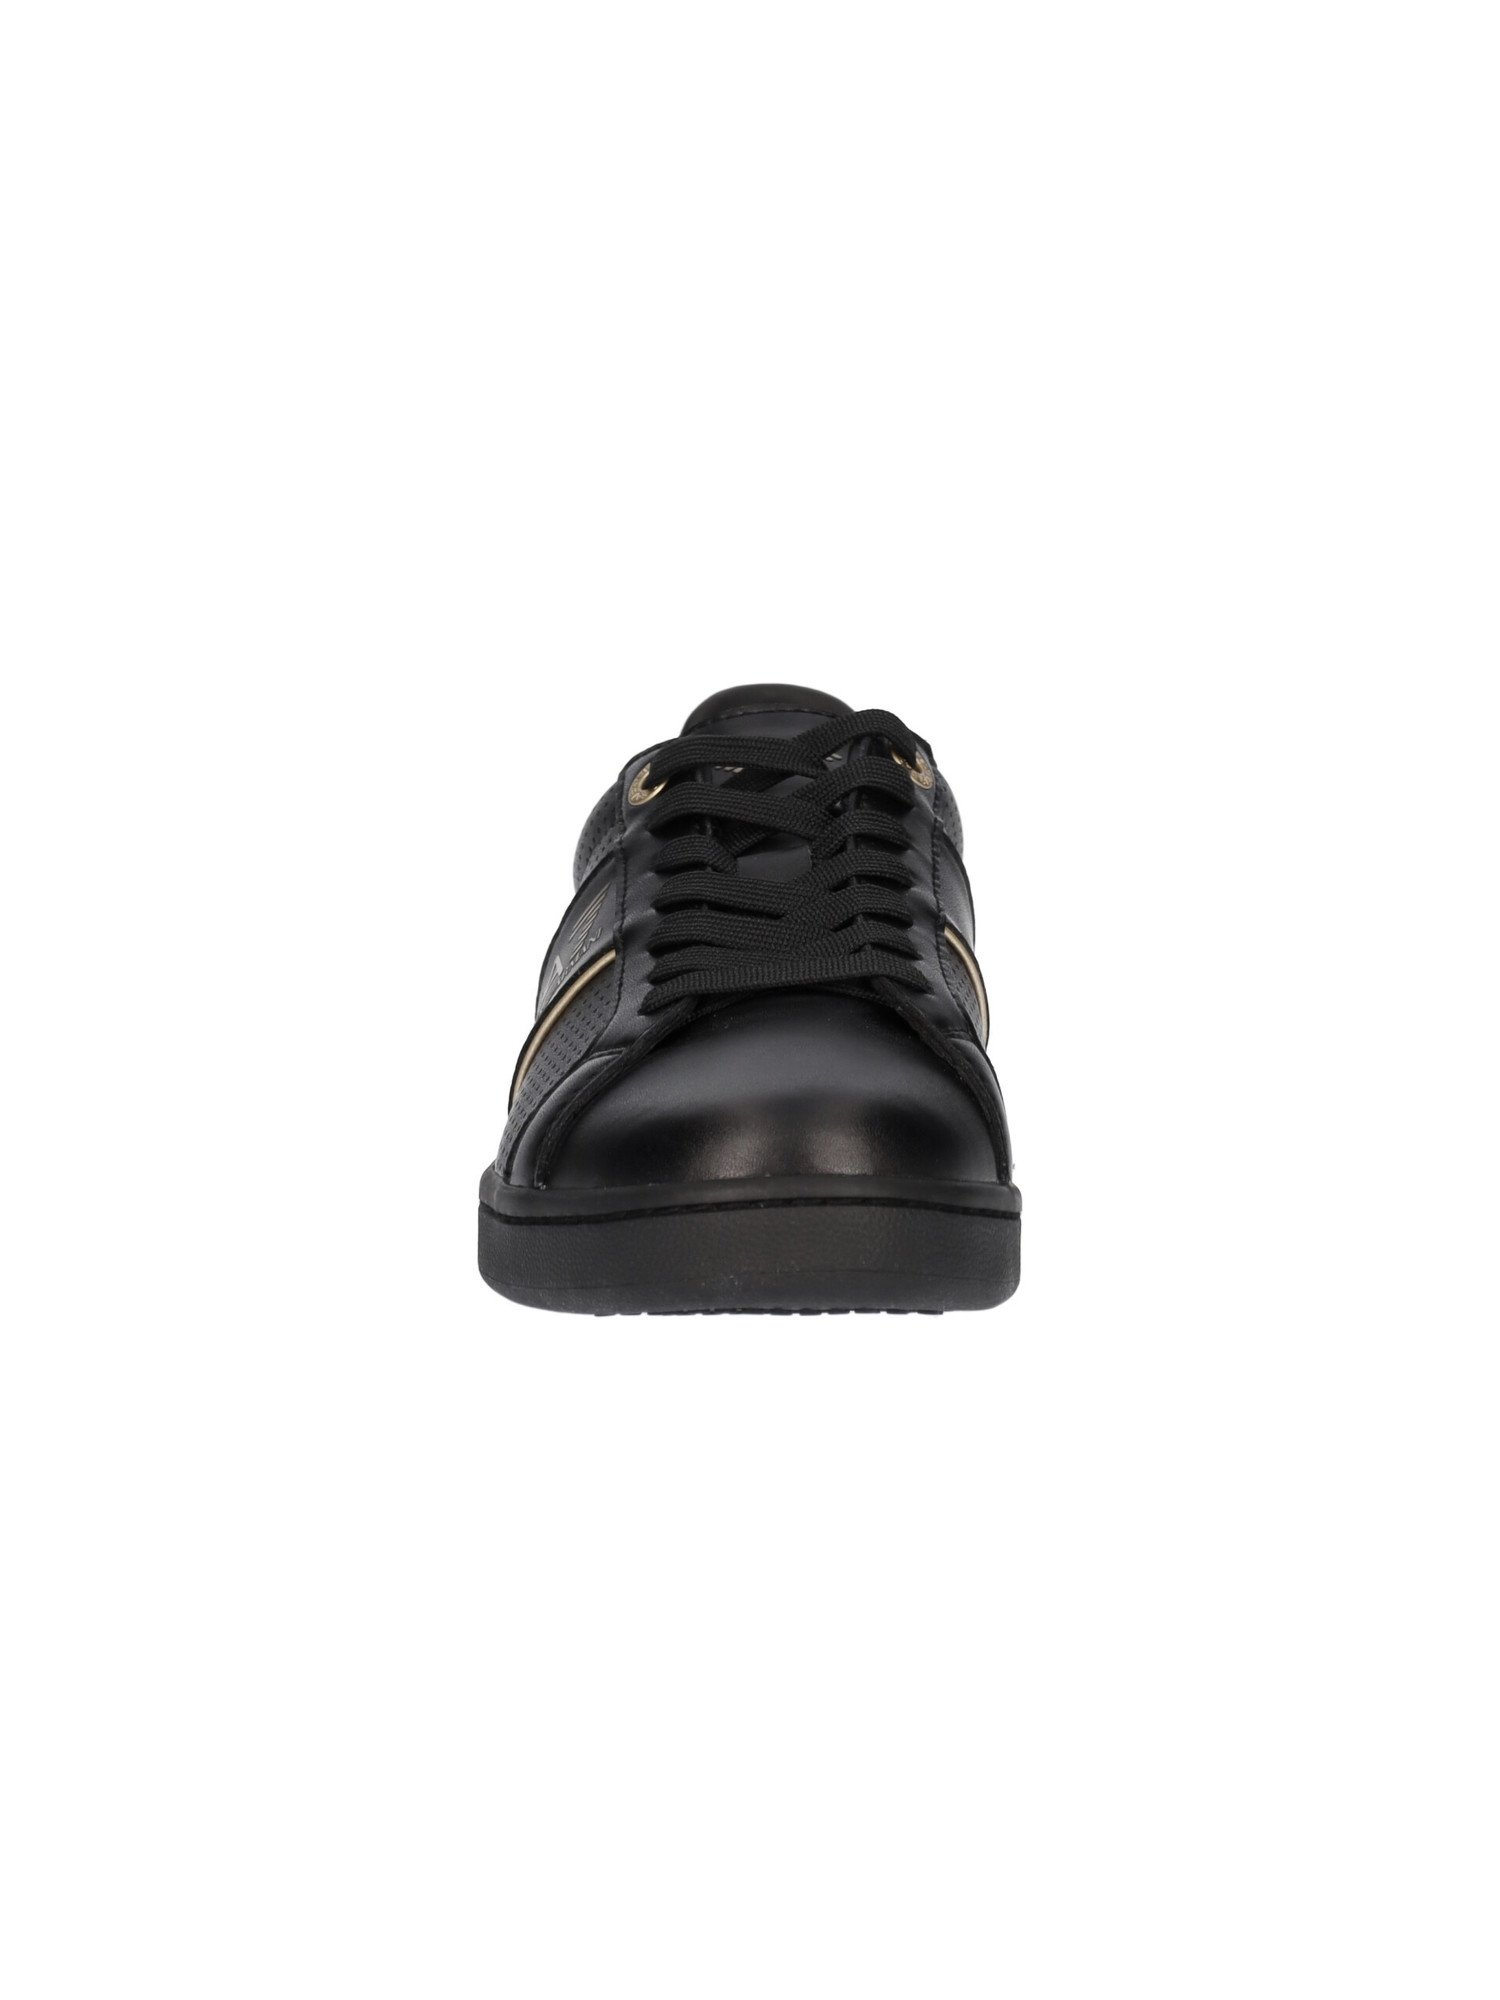 sneaker-emporio-armani-da-uomo-nera-d8712f